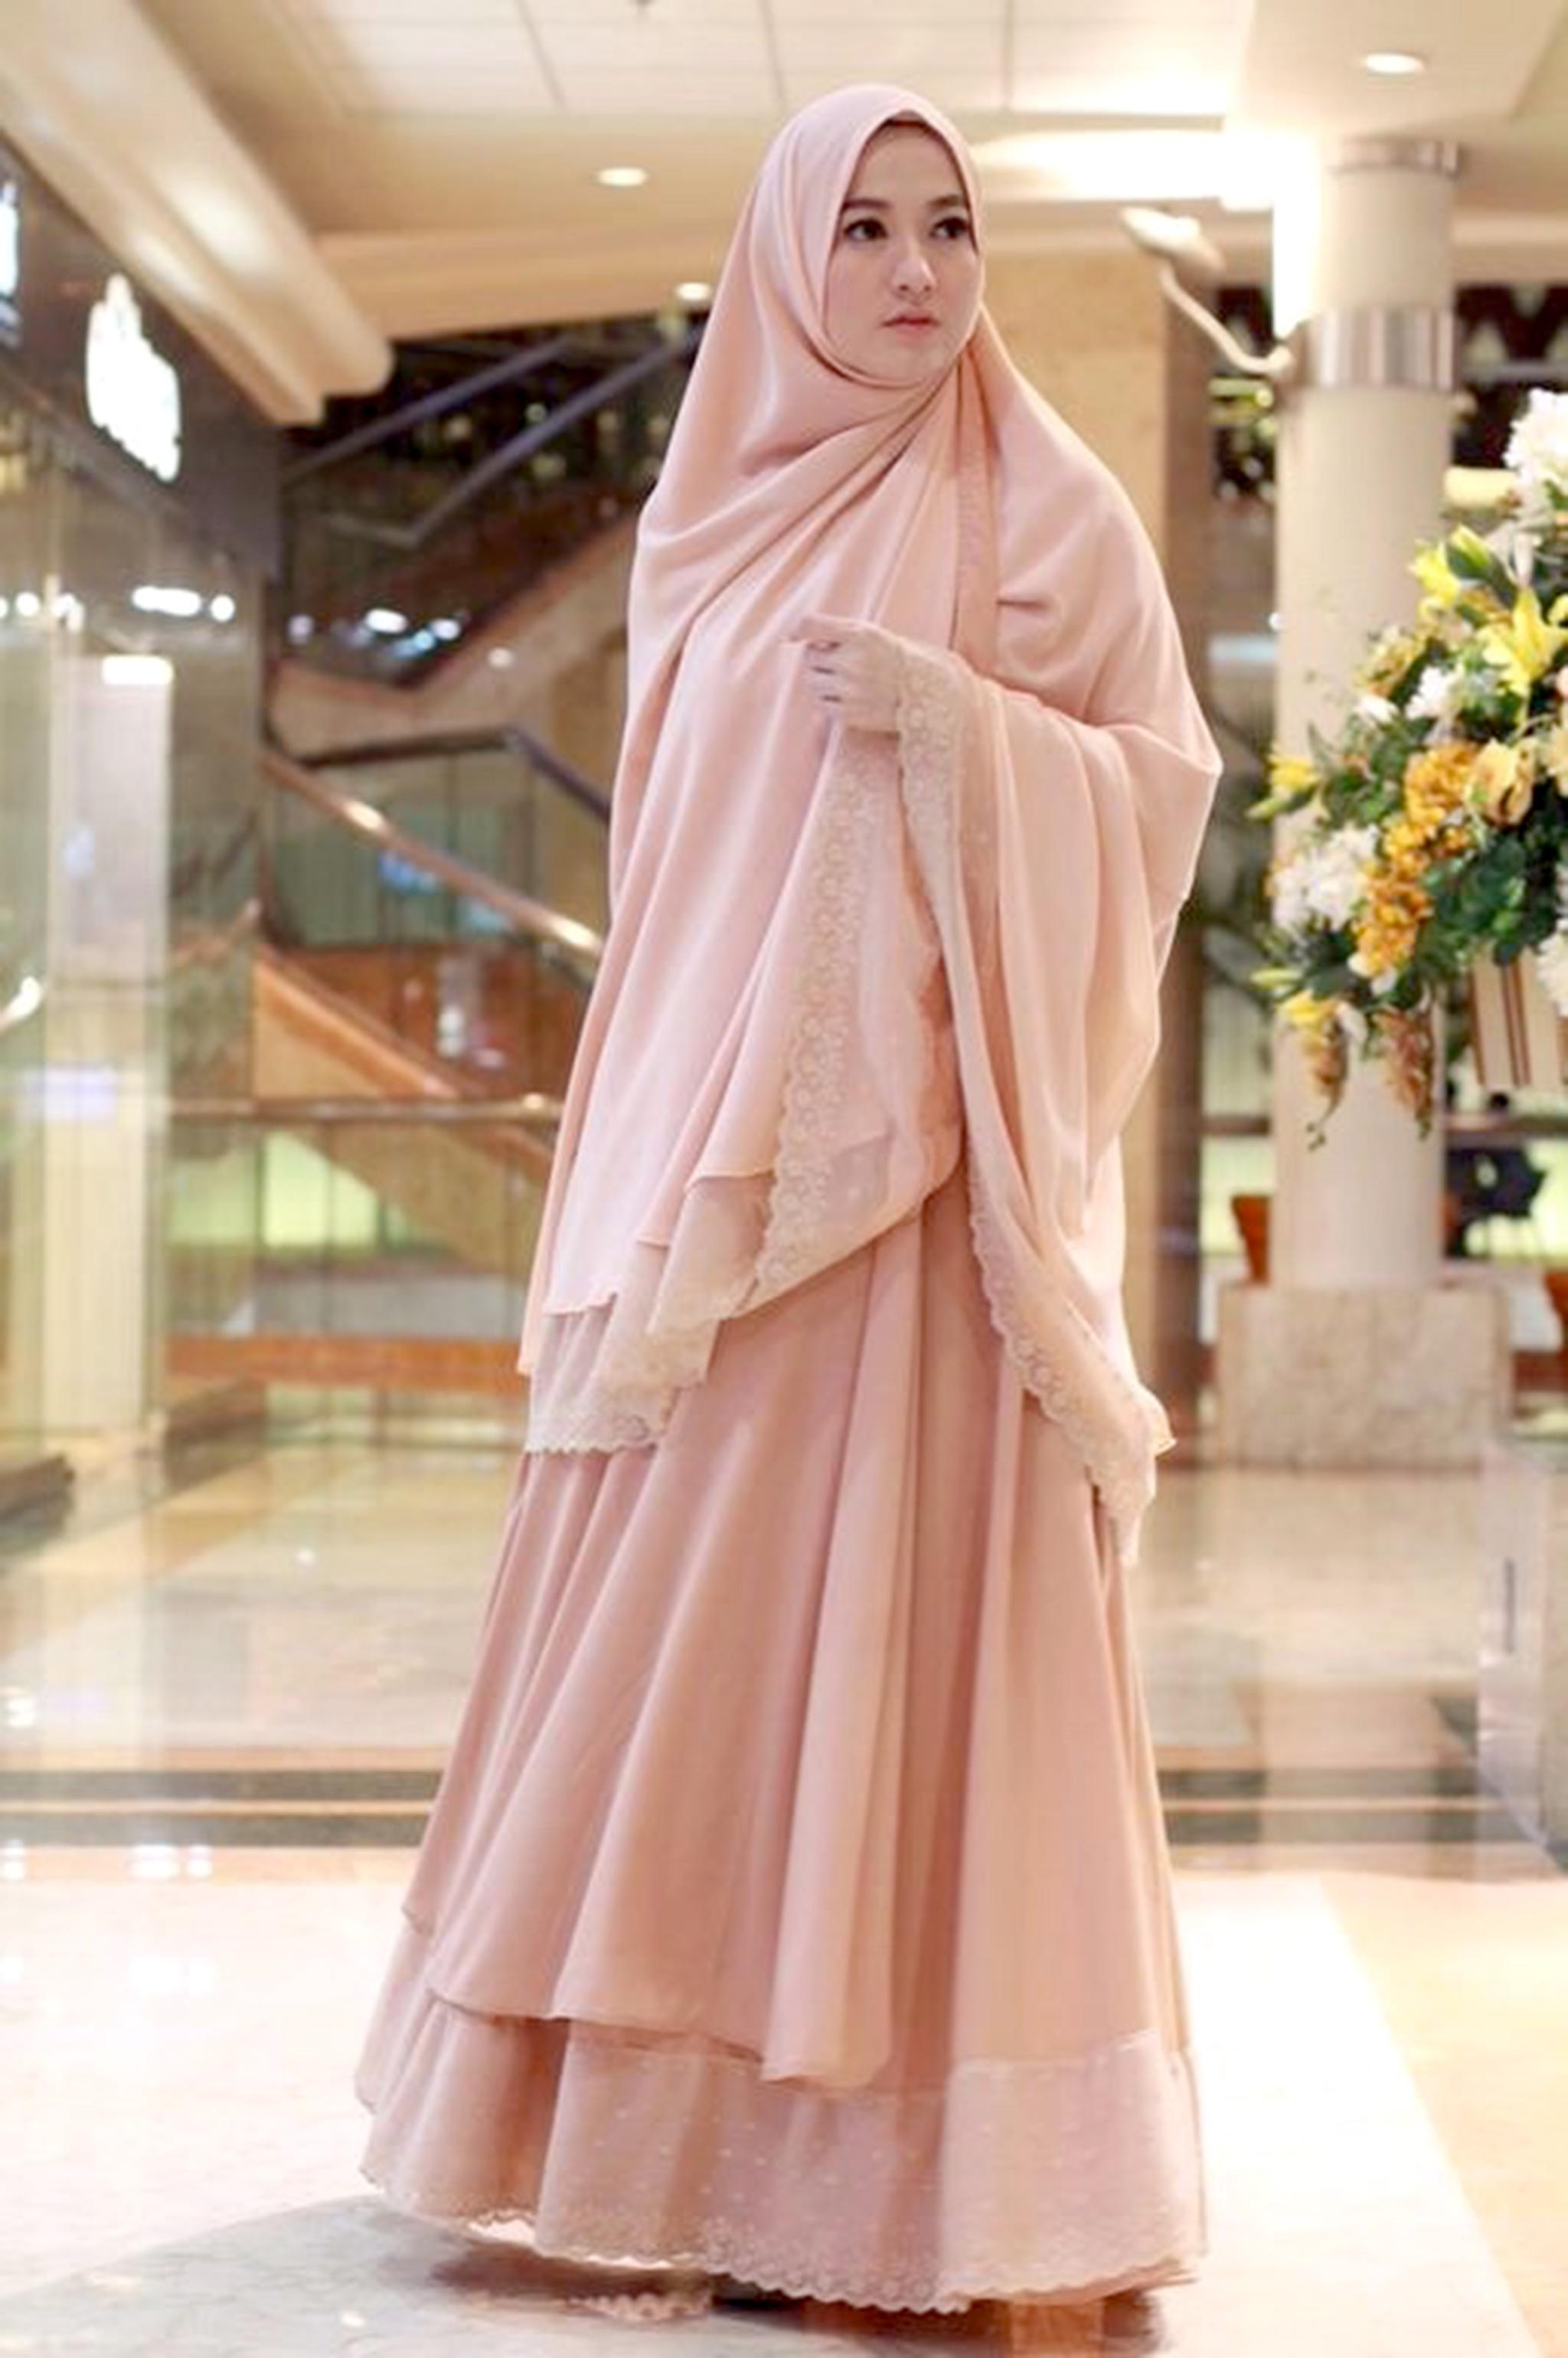 Sederhana dan Elegan, Tips Style Hijab Syar'i Pesta untuk Kondangan Ini Wajib Moms Tahu